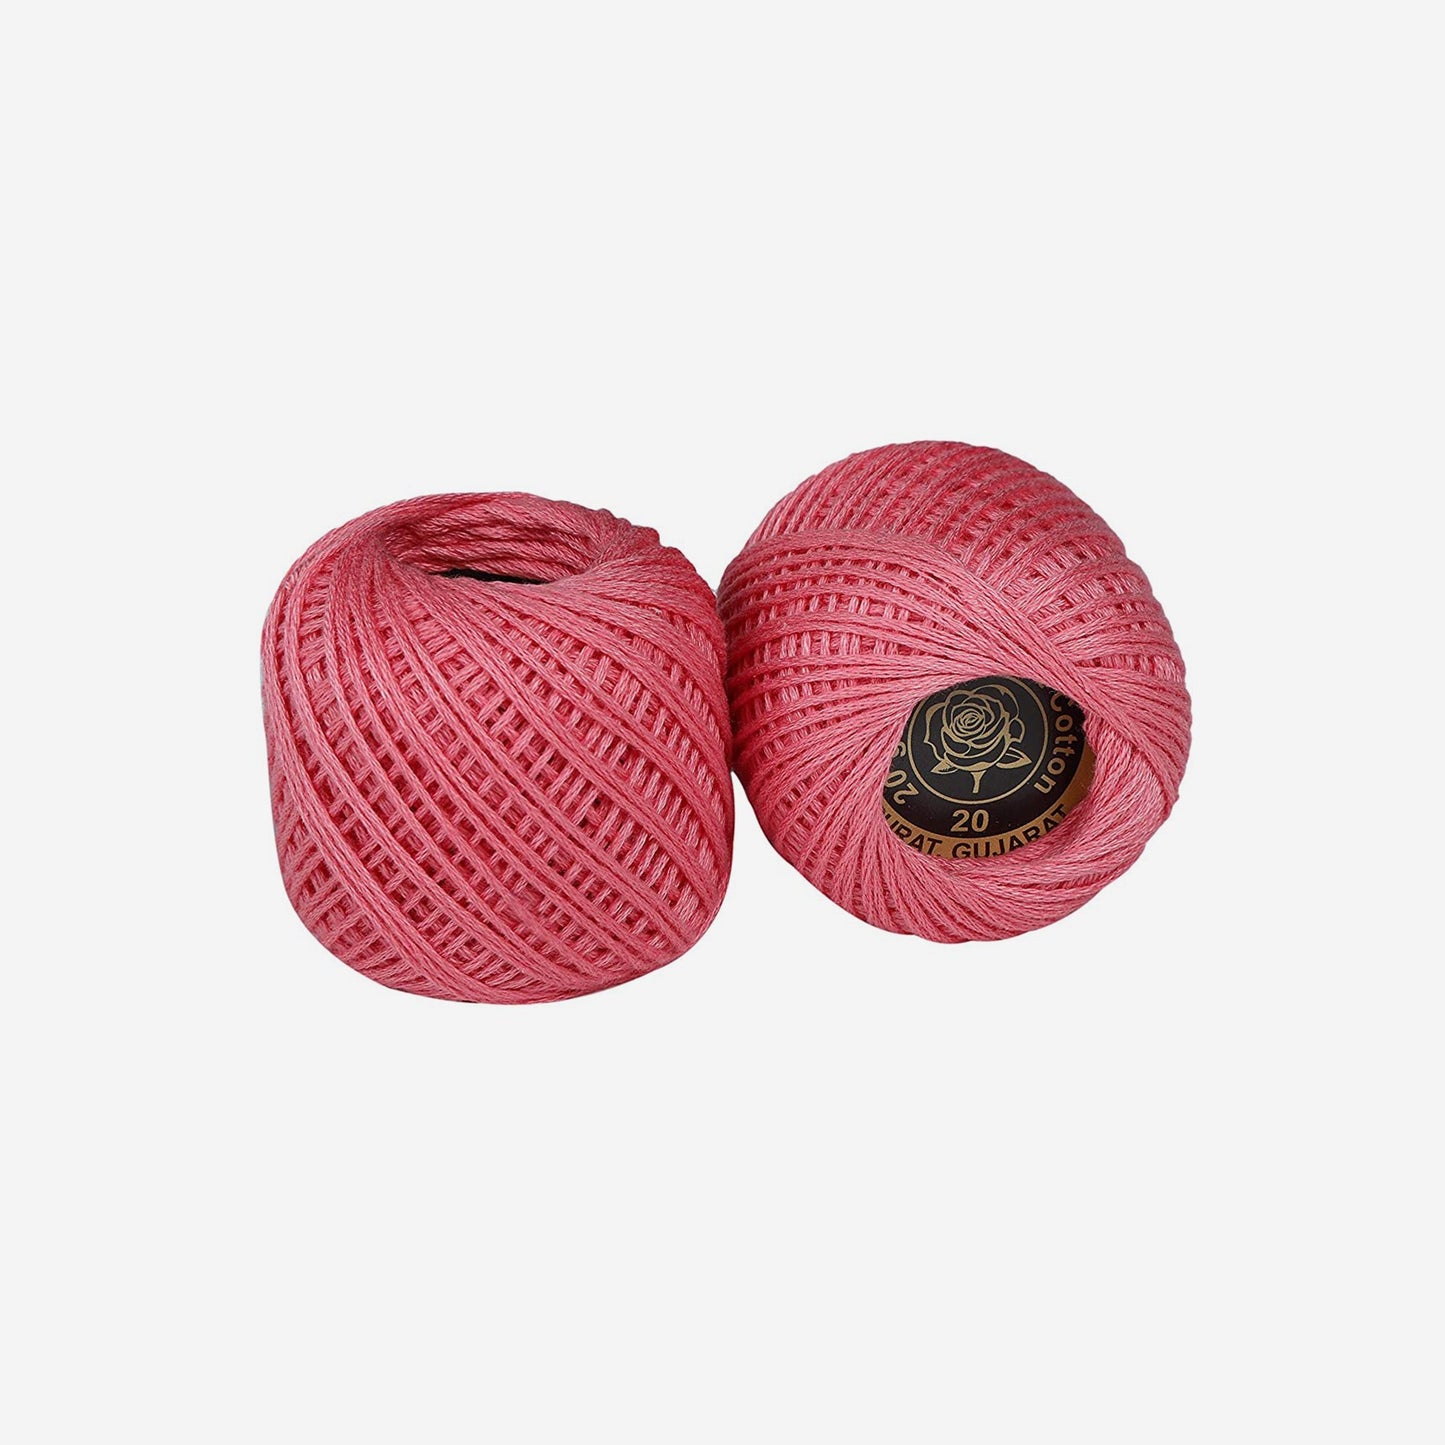 Hand-crochet hoops (Variation 8)